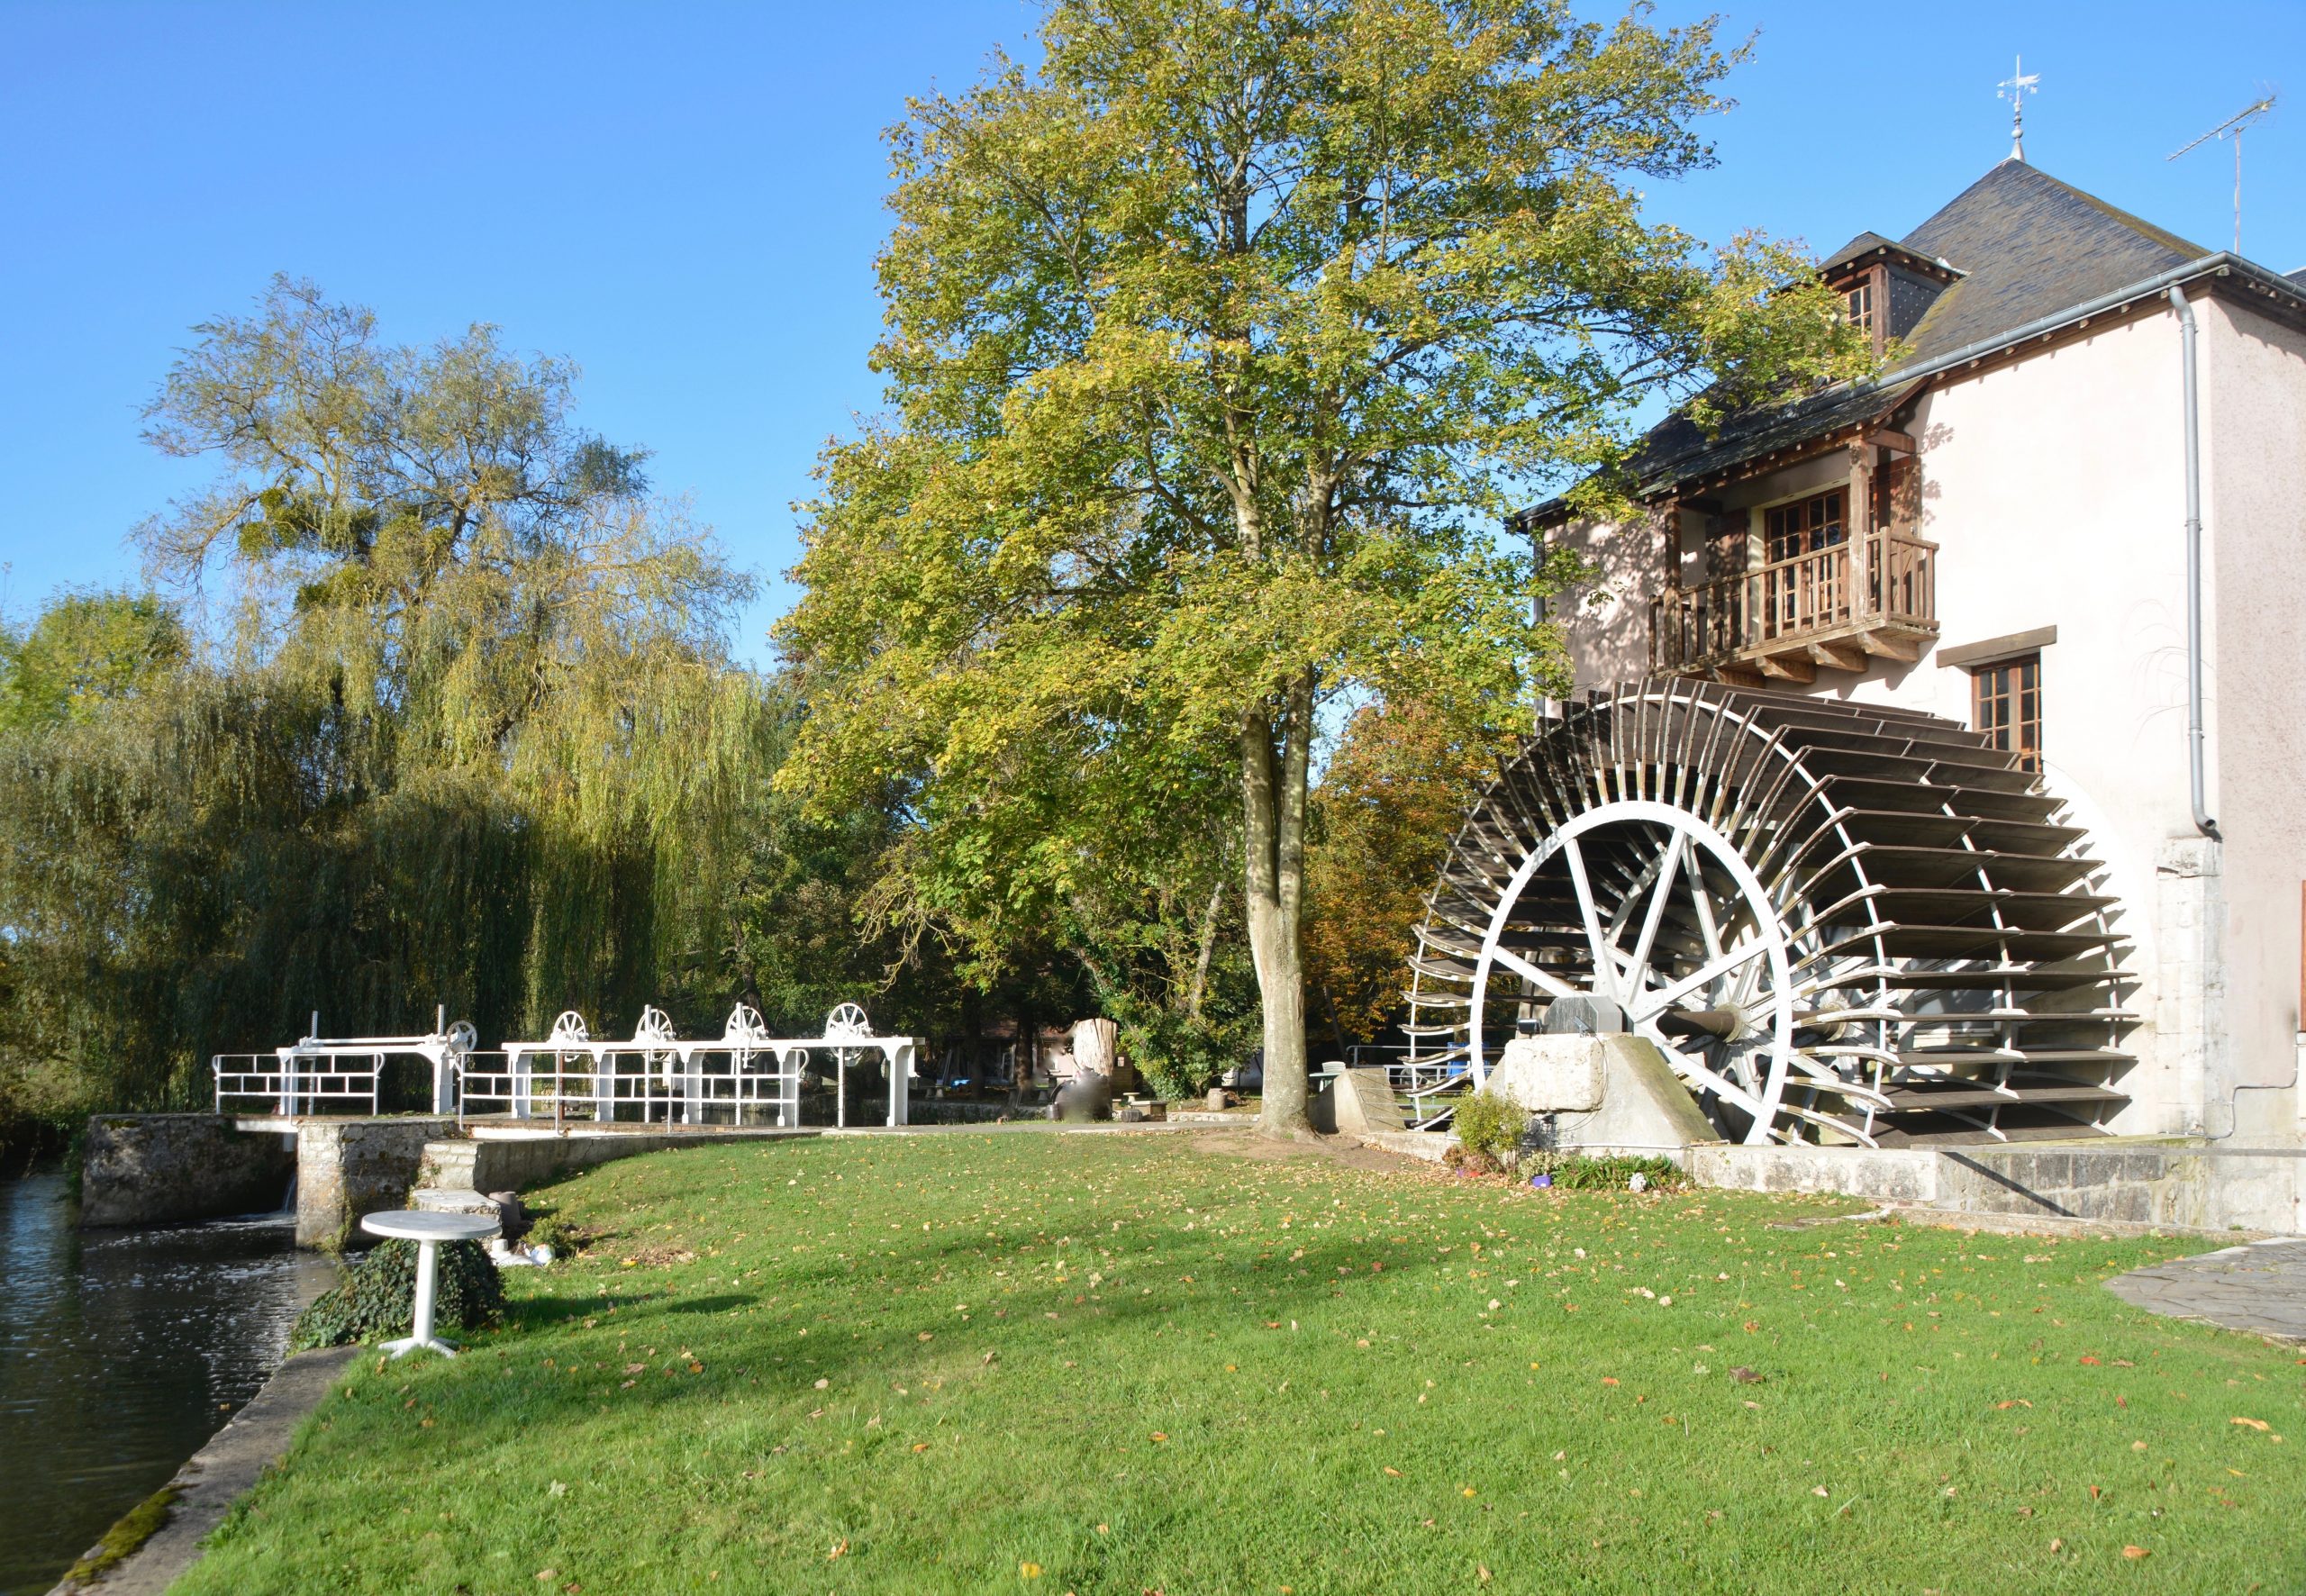 Moulin à eau sur l’Eure avec une grande roue